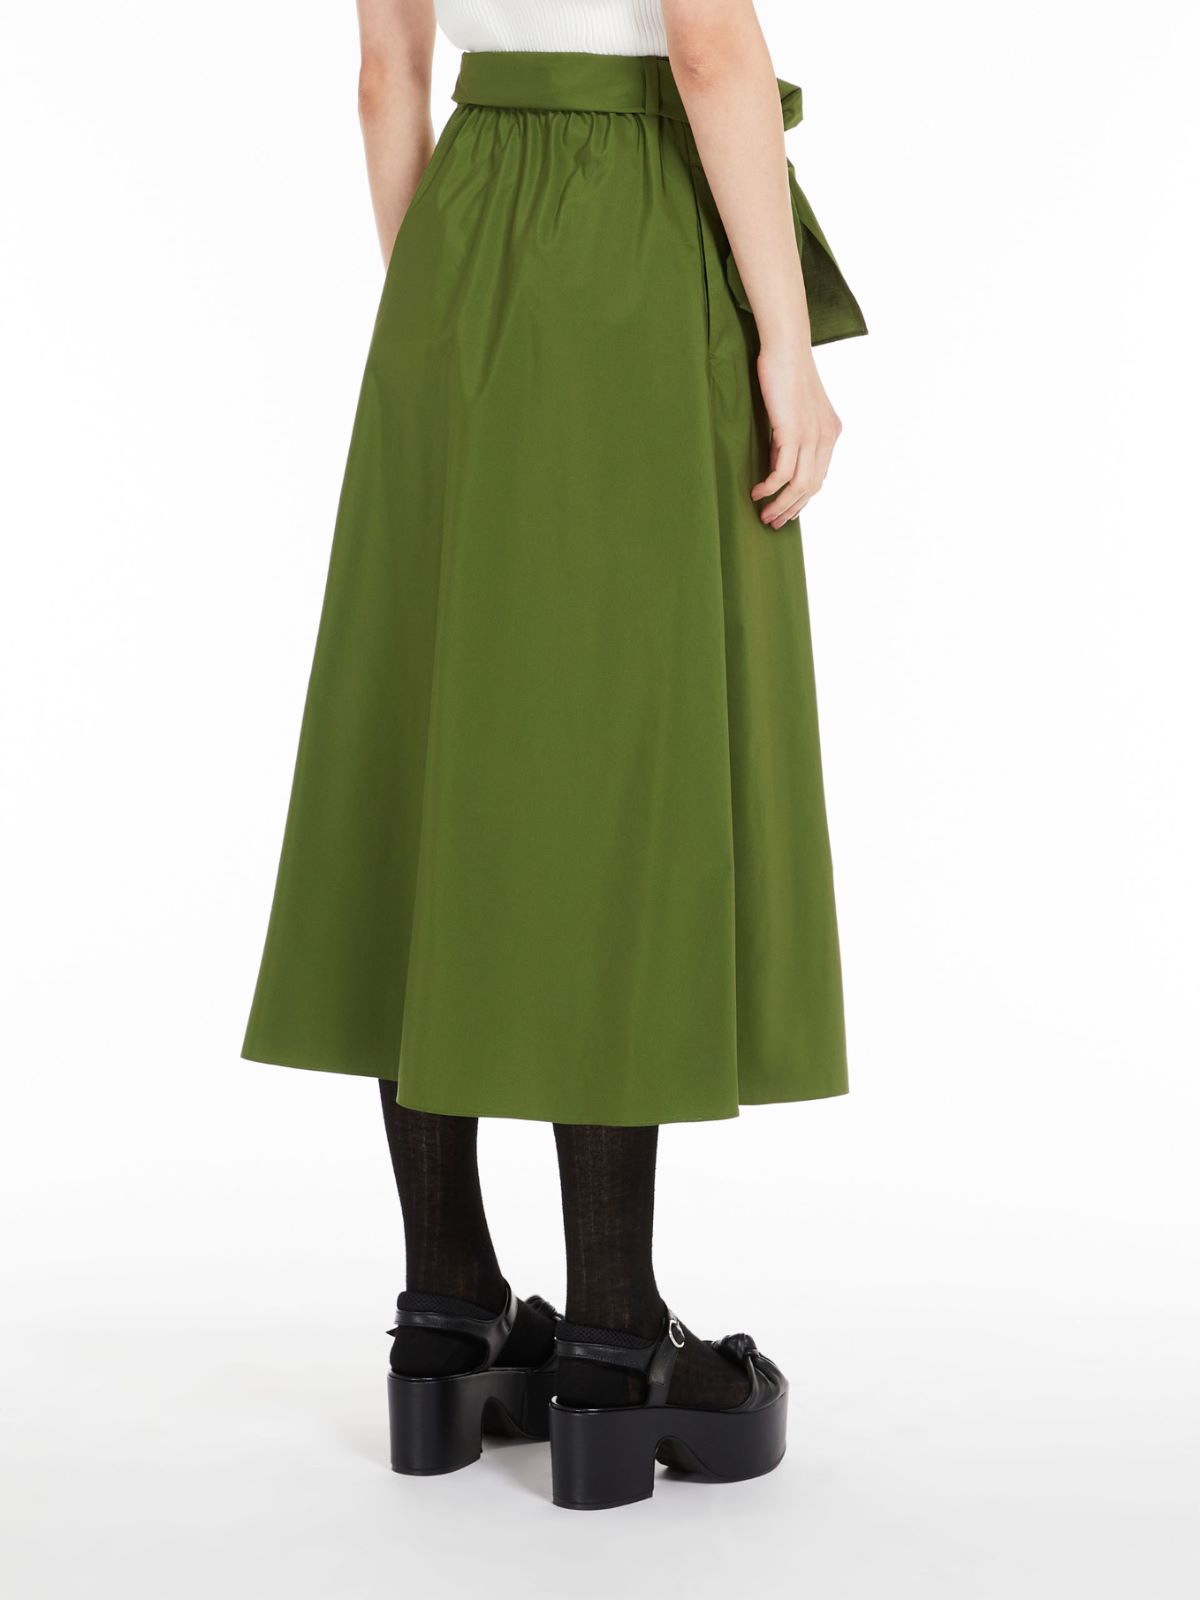 green long full skirt